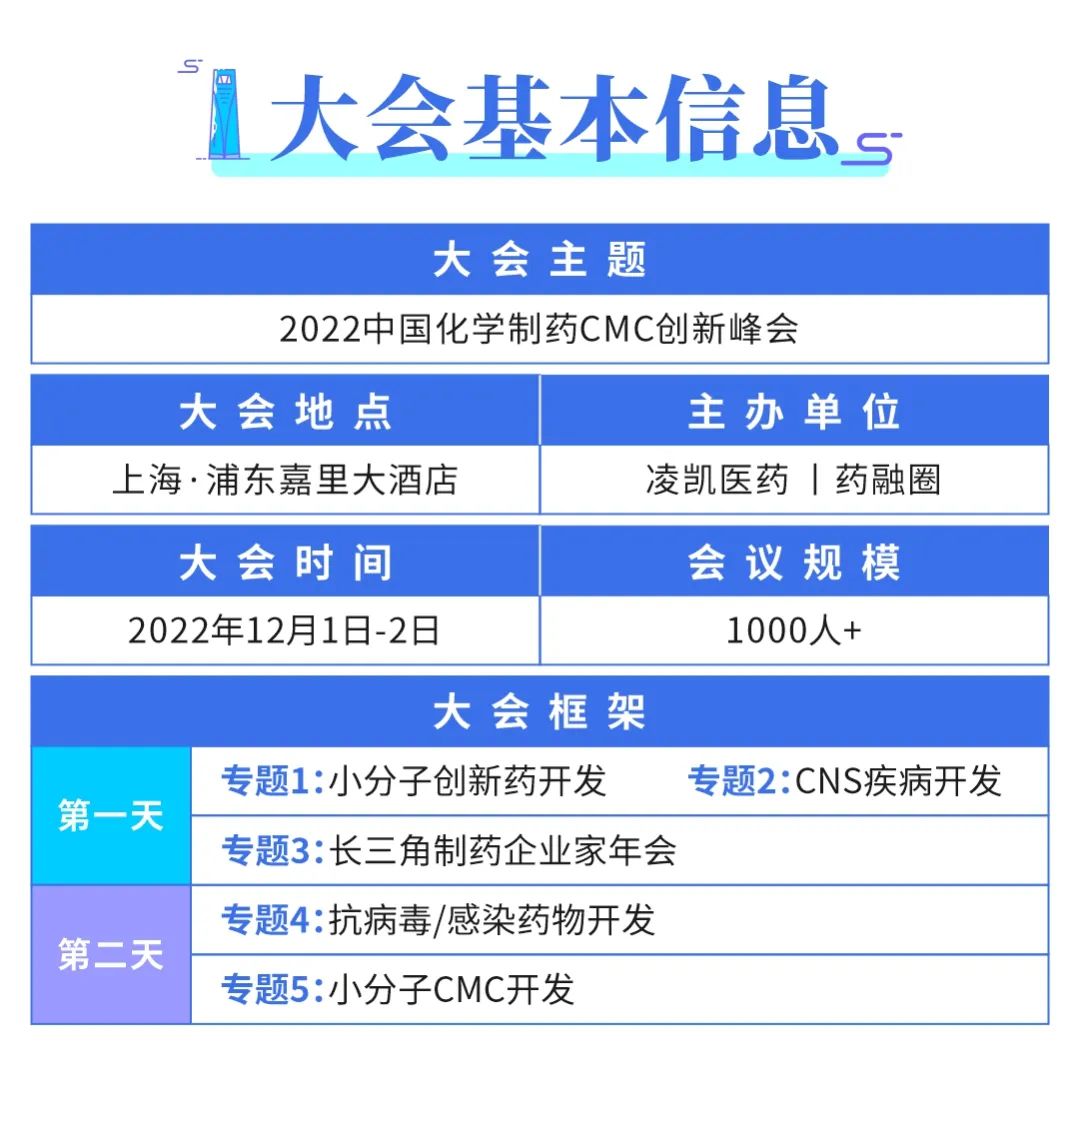 2022中国化学制药CMC创新峰会基本信息